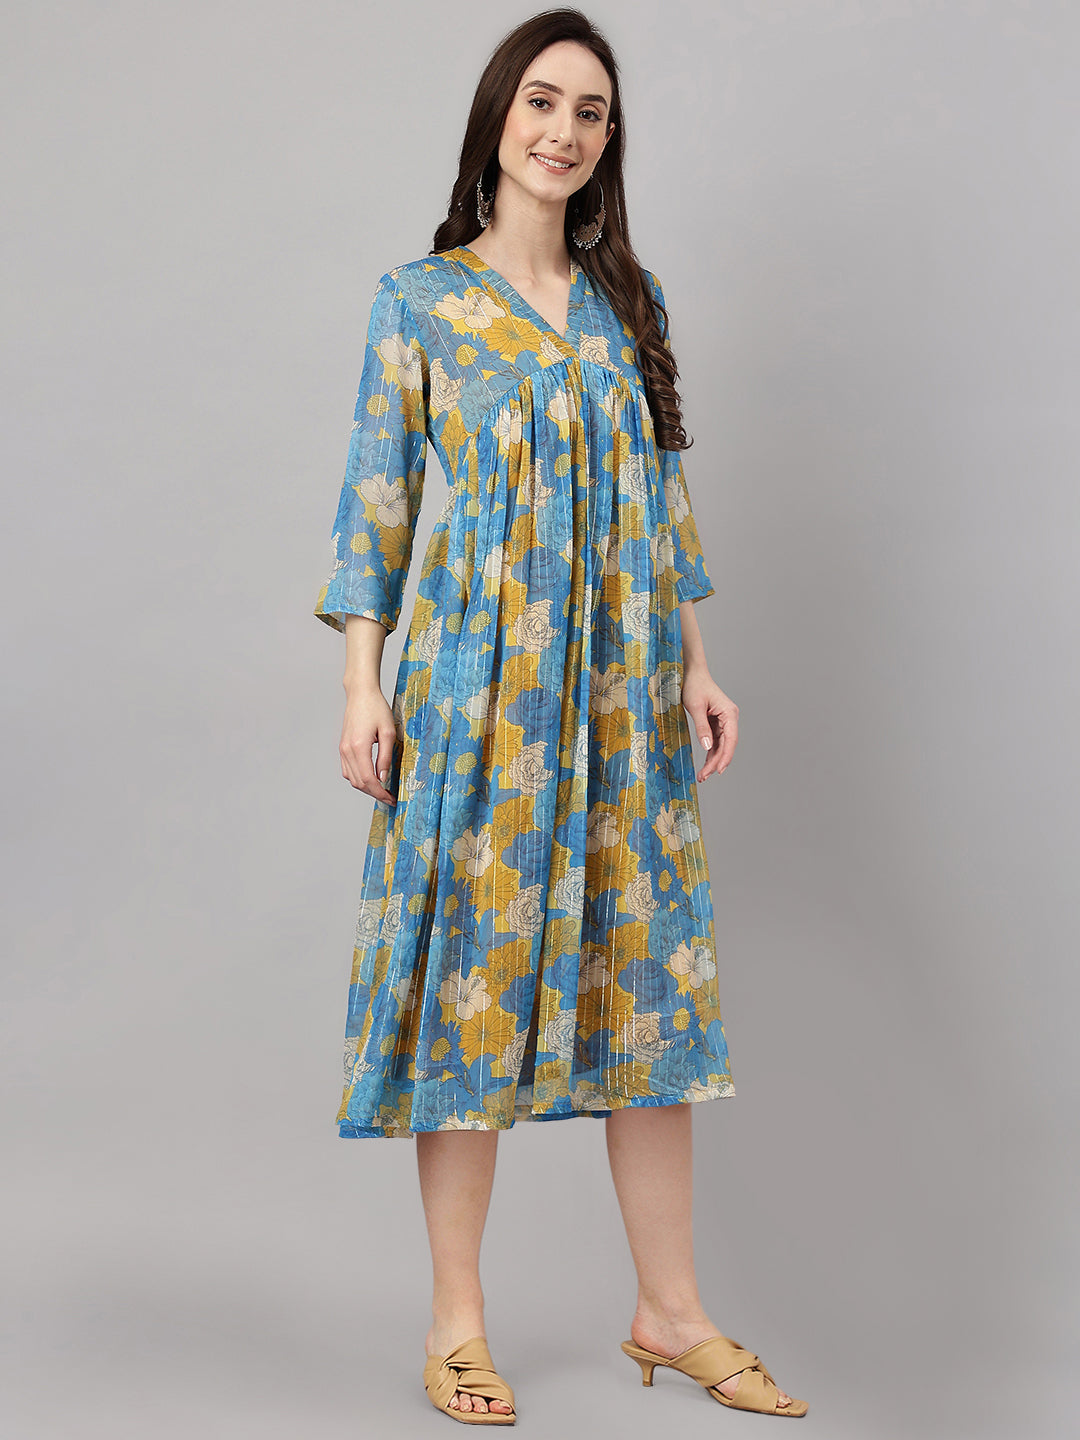 Women's Floral Printed Yellow Chiffon Lurex Dress - Janasya